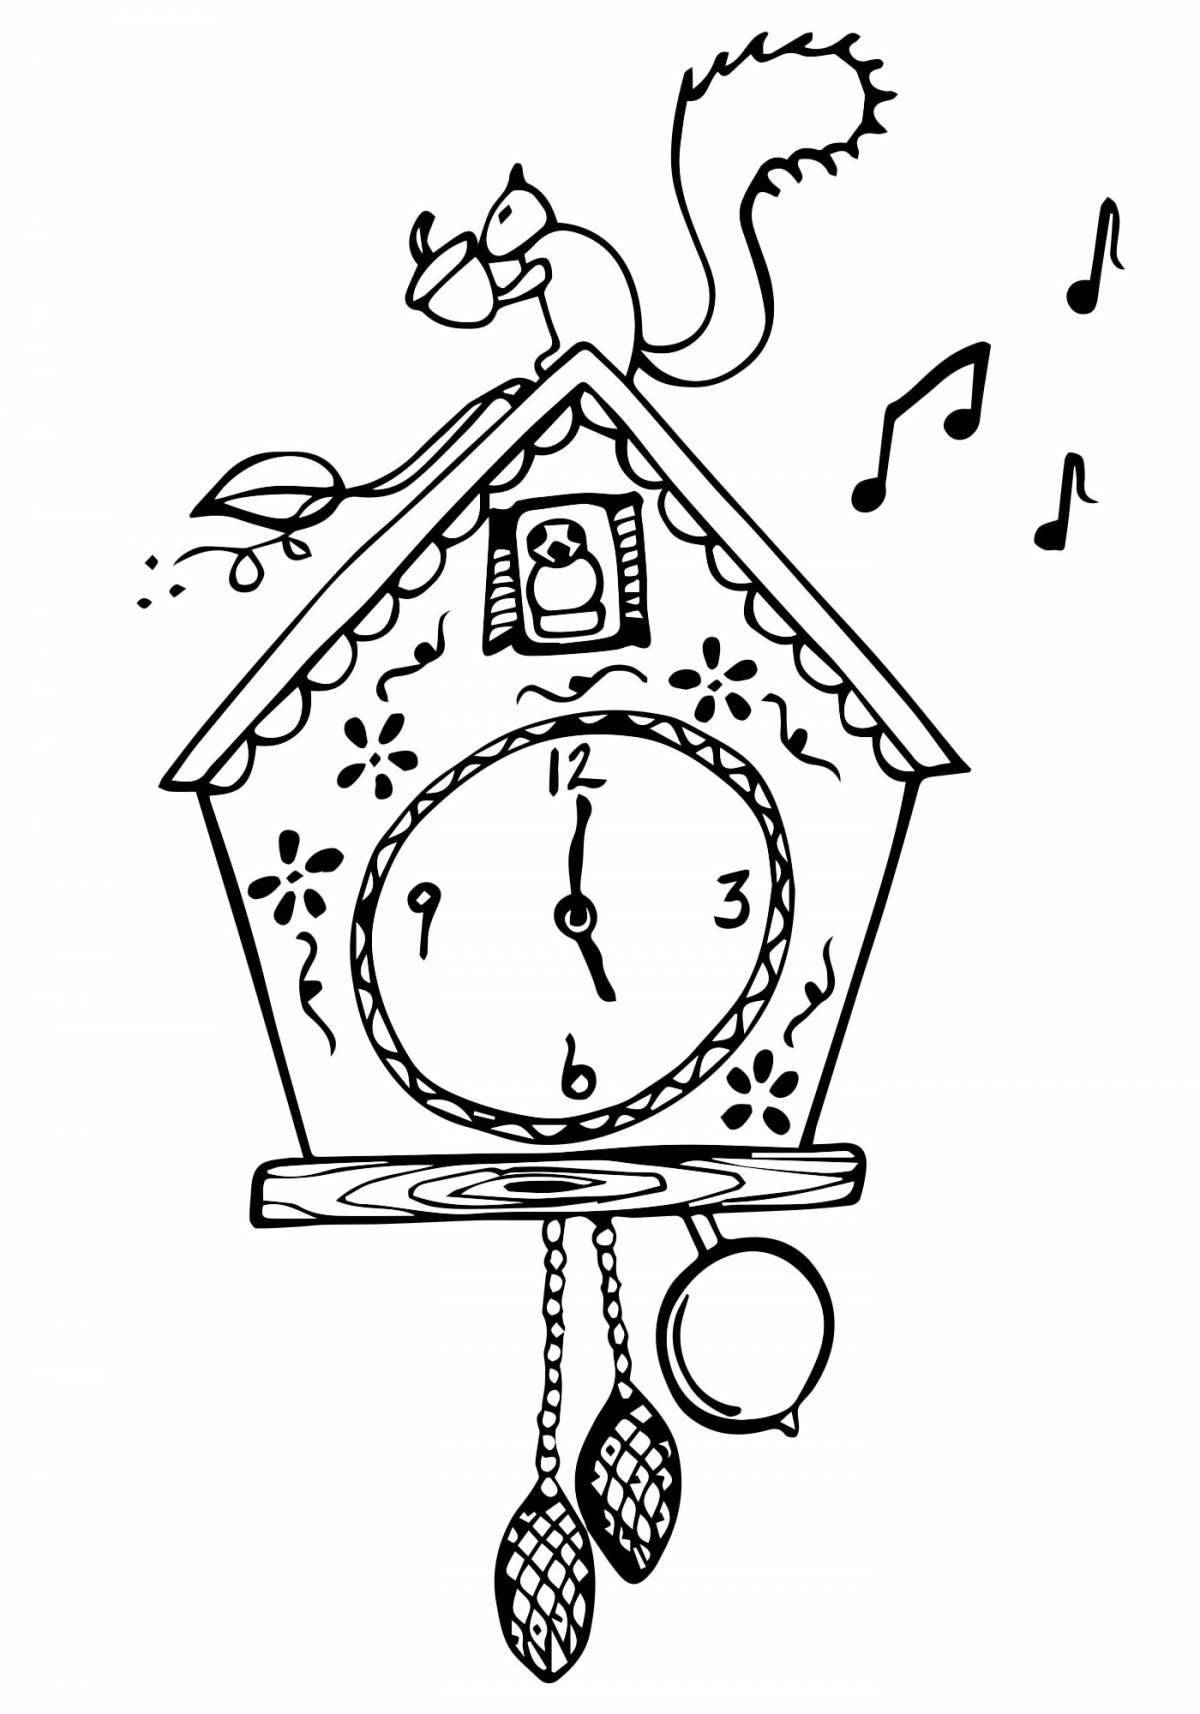 Cuckoo clock #1